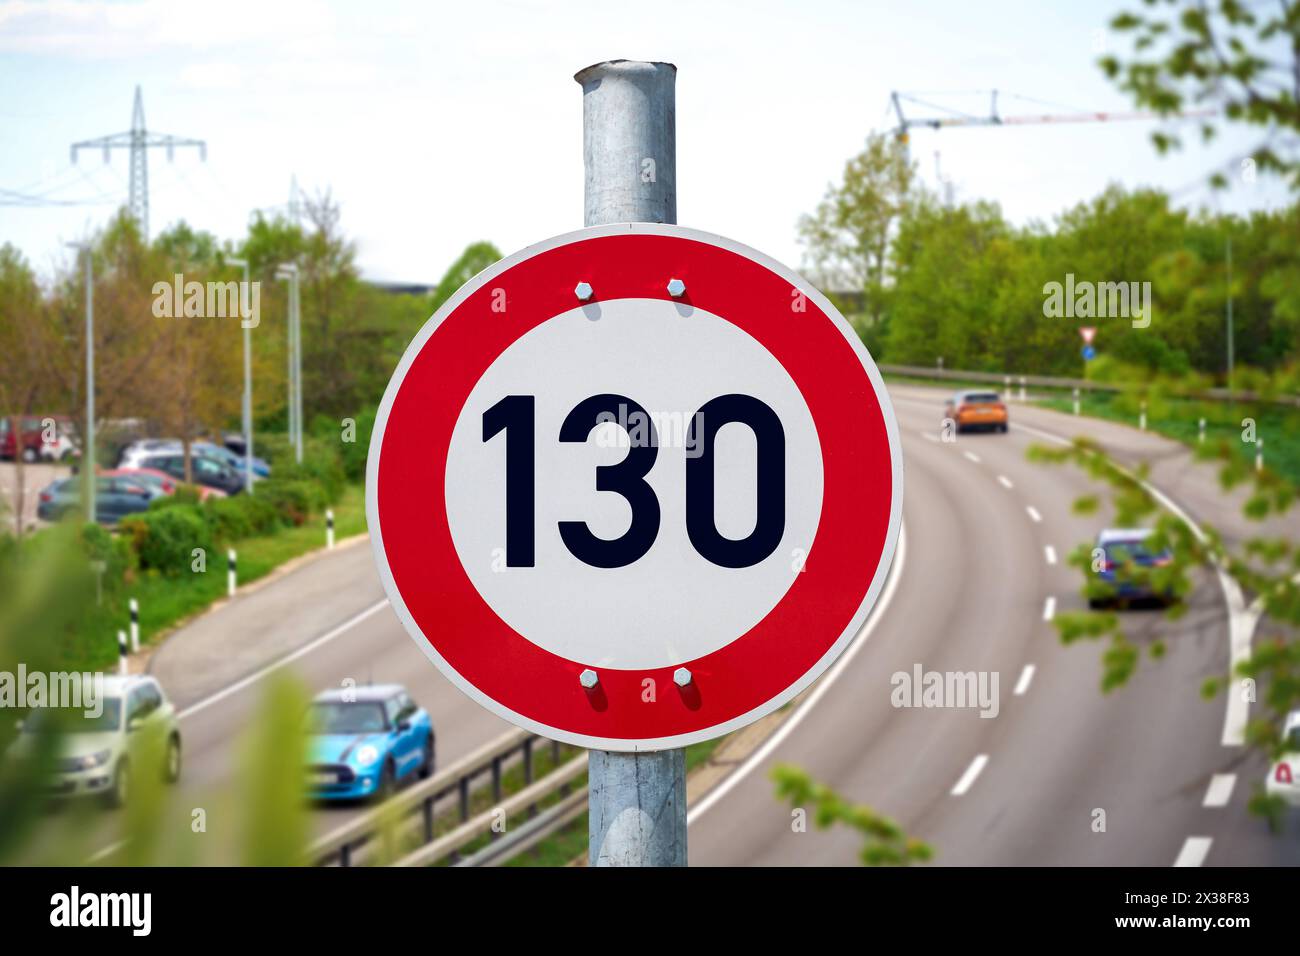 25 aprile 2024: Limite di velocità sulle autostrade, segnale stradale con velocità massima di 130 km/h davanti a un'autostrada. FOTOMONTAGGIO *** Tempolimit auf Autobahnen, Verkehrsschild mit Höchstgeschwindigkeit 130 km/h vor einer Autobahn. FOTOMONTAGE Foto Stock